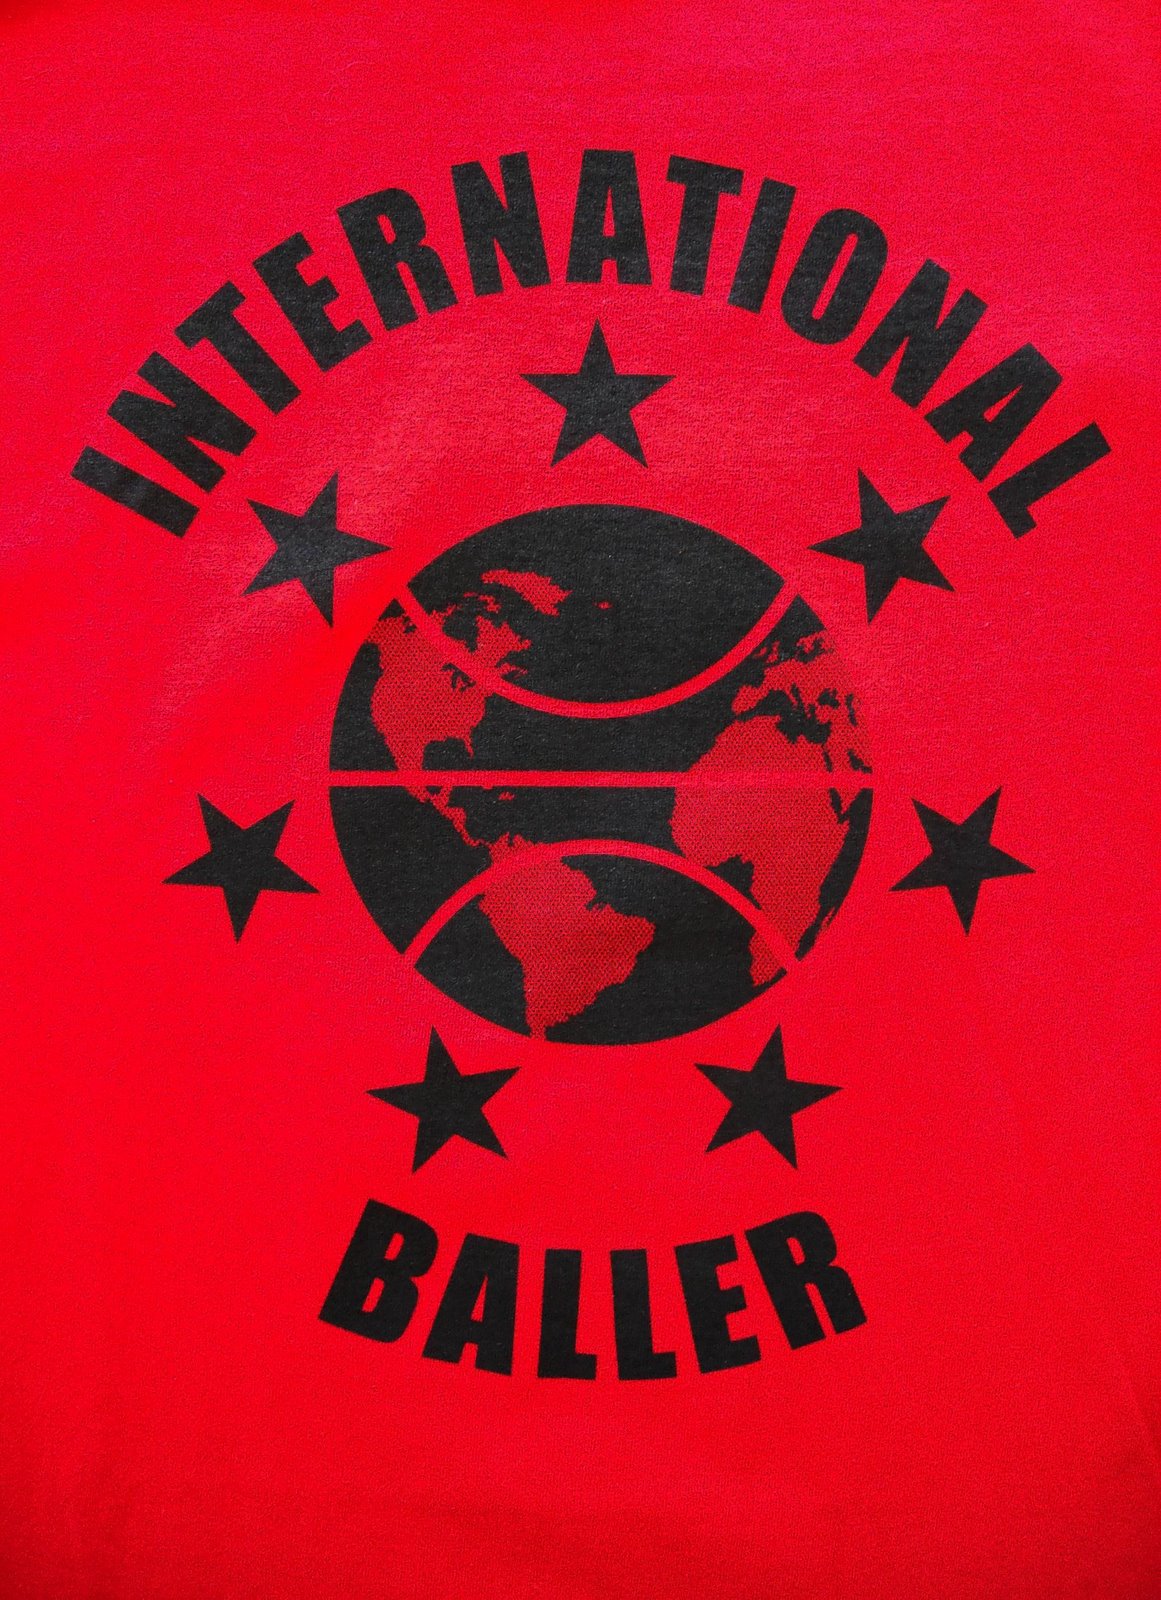 [Baller.JPG]